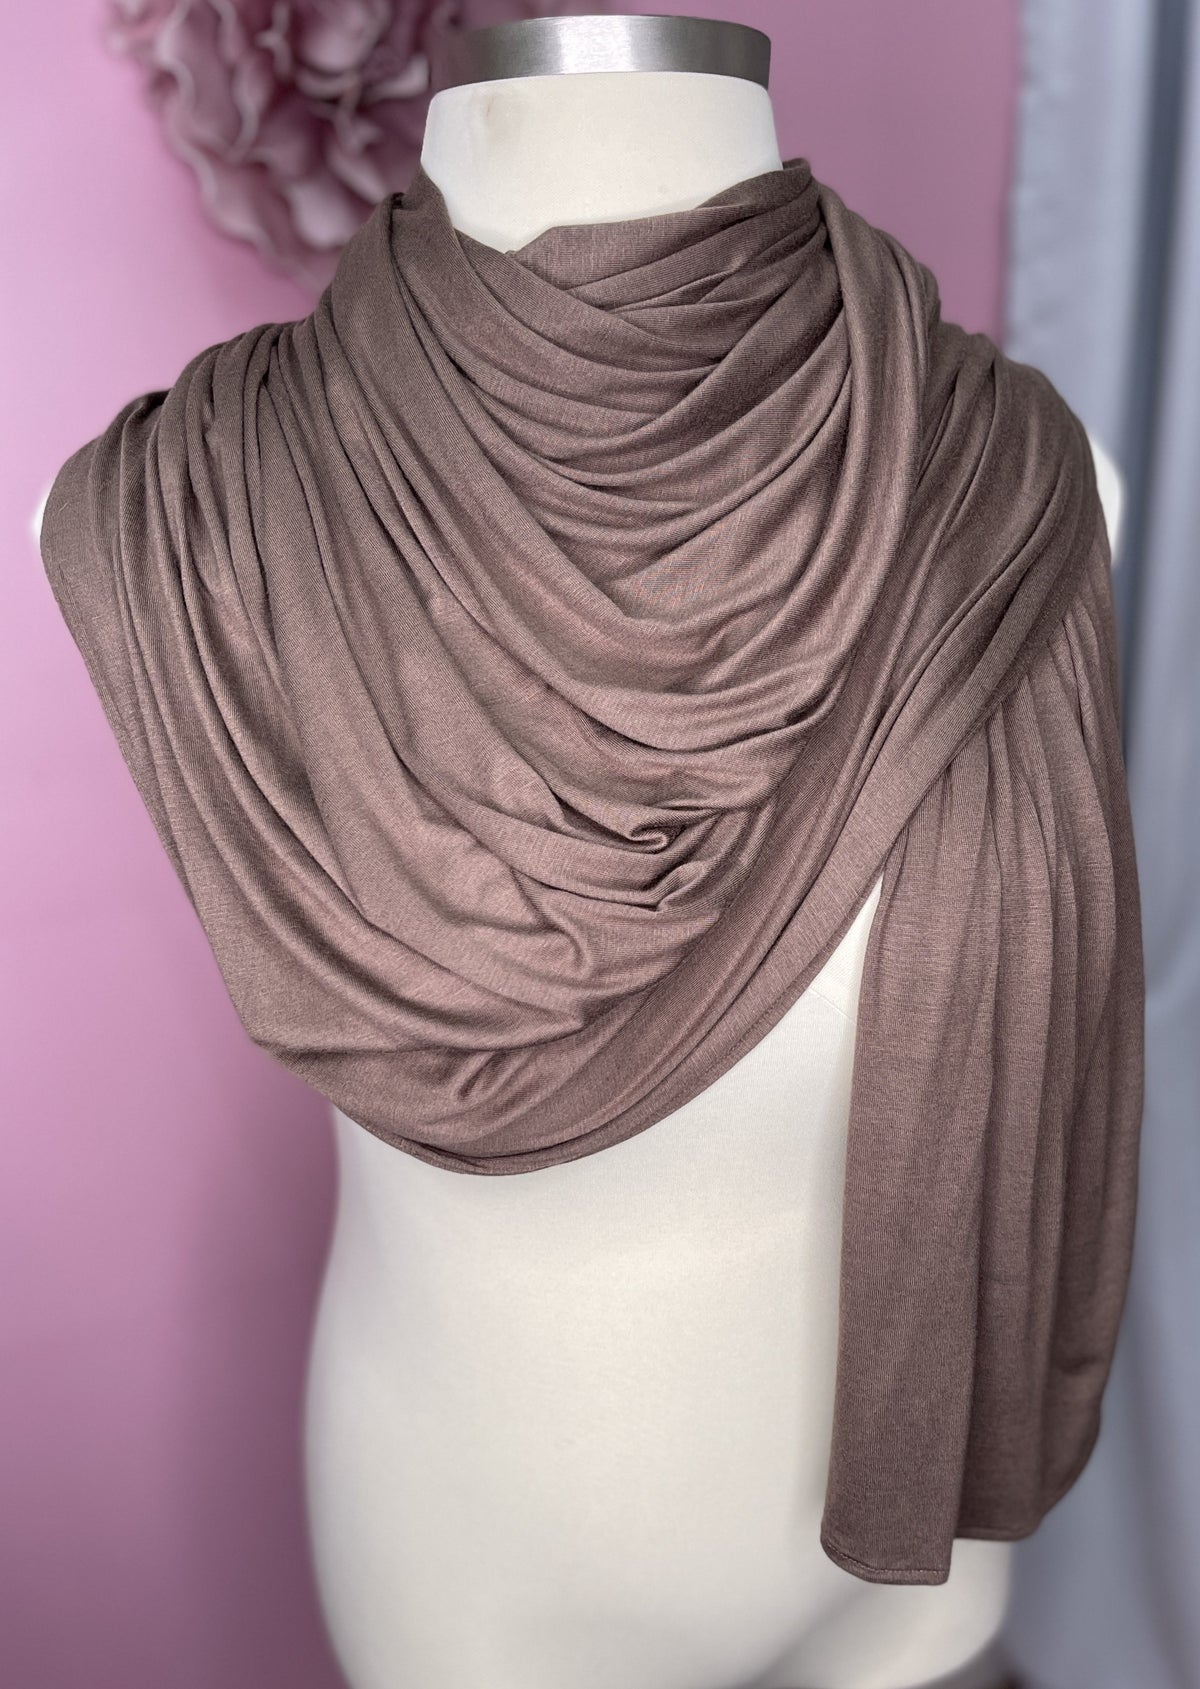 Mocha - XL Jersey Knit Hijab